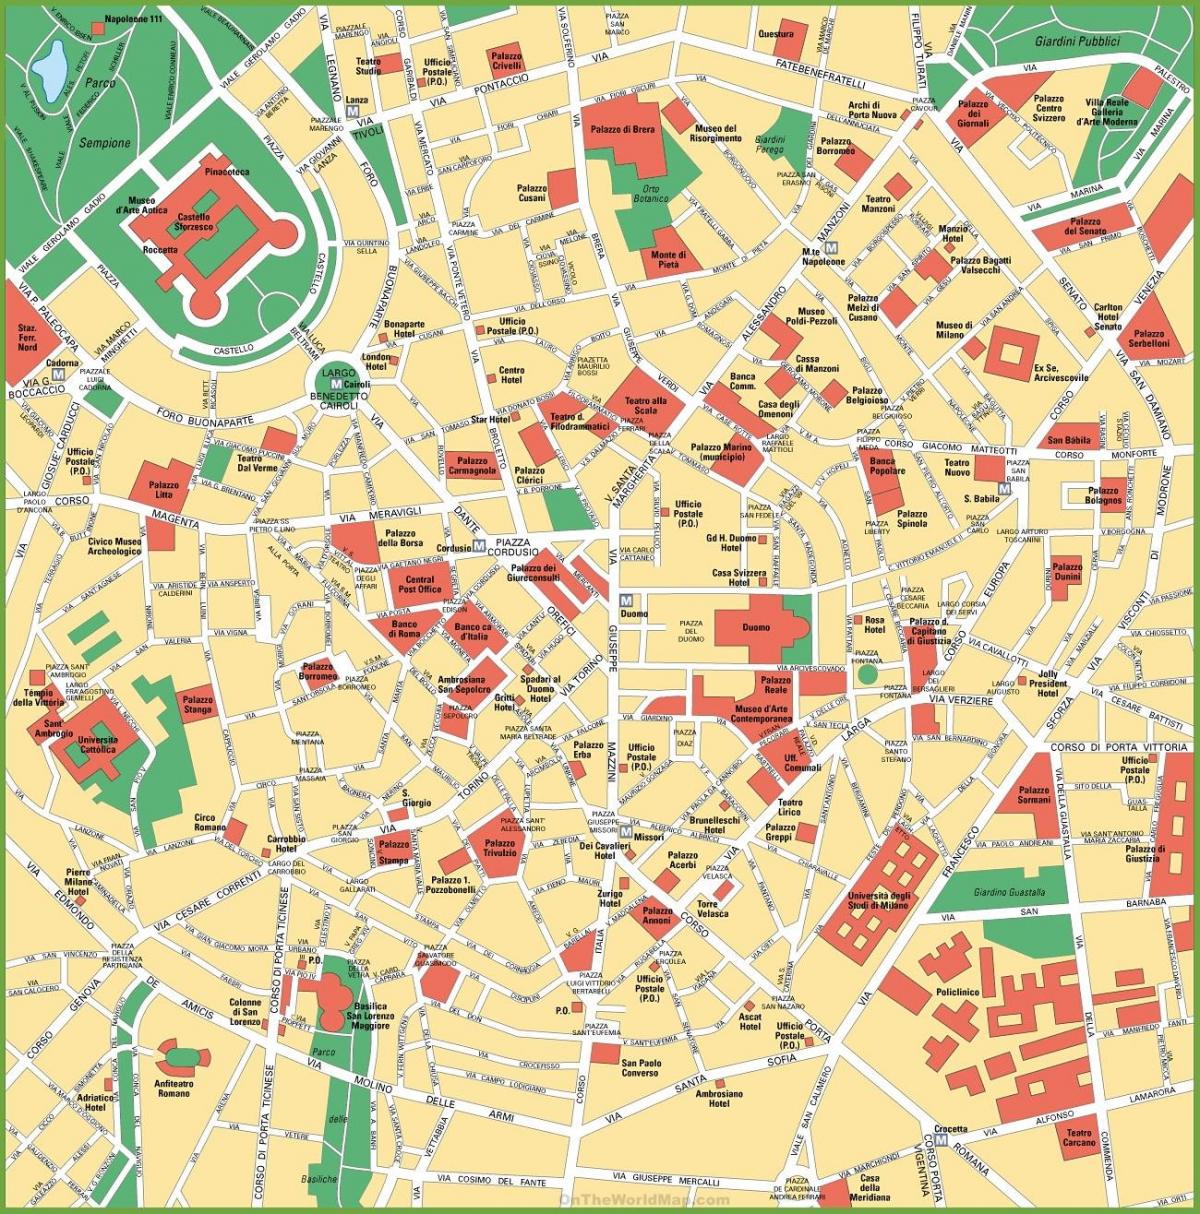 milano sentro ng lungsod mapa